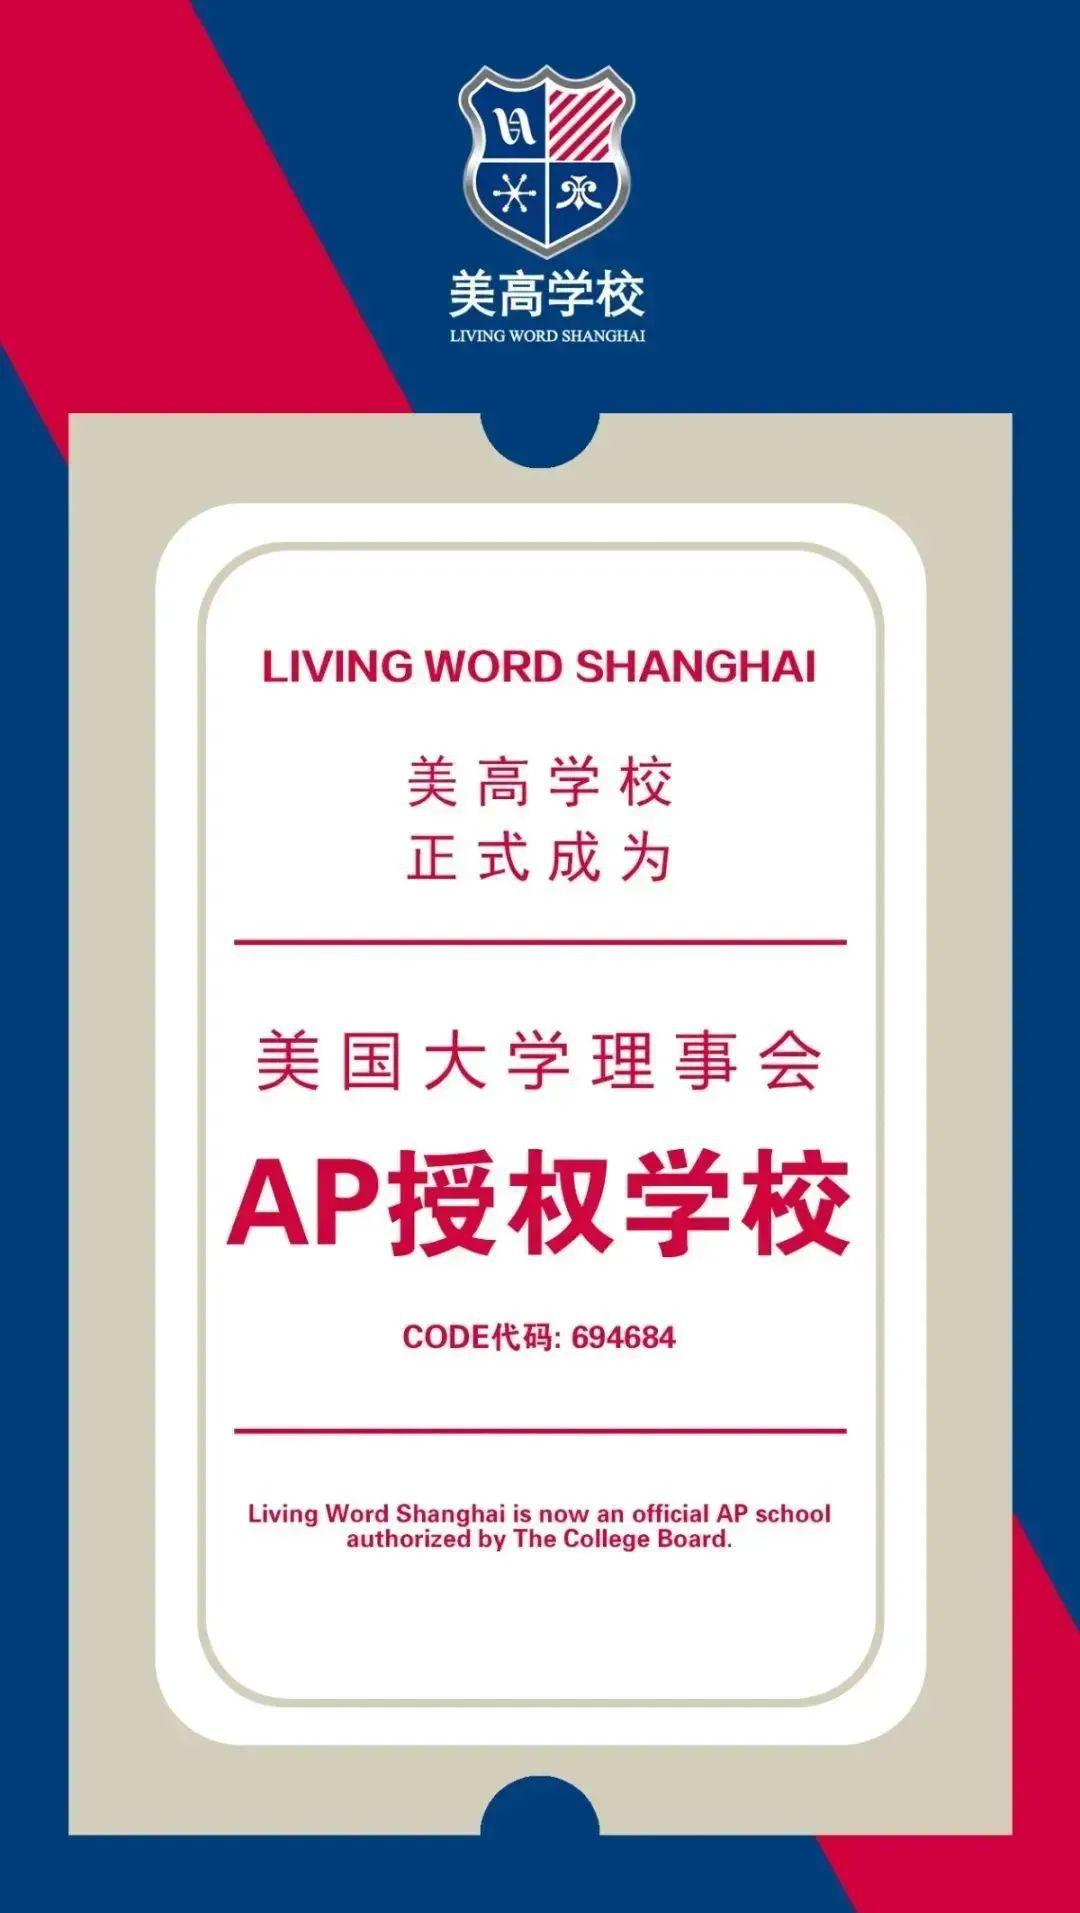 上海美高学校为美国大学理事会认证的AP学校